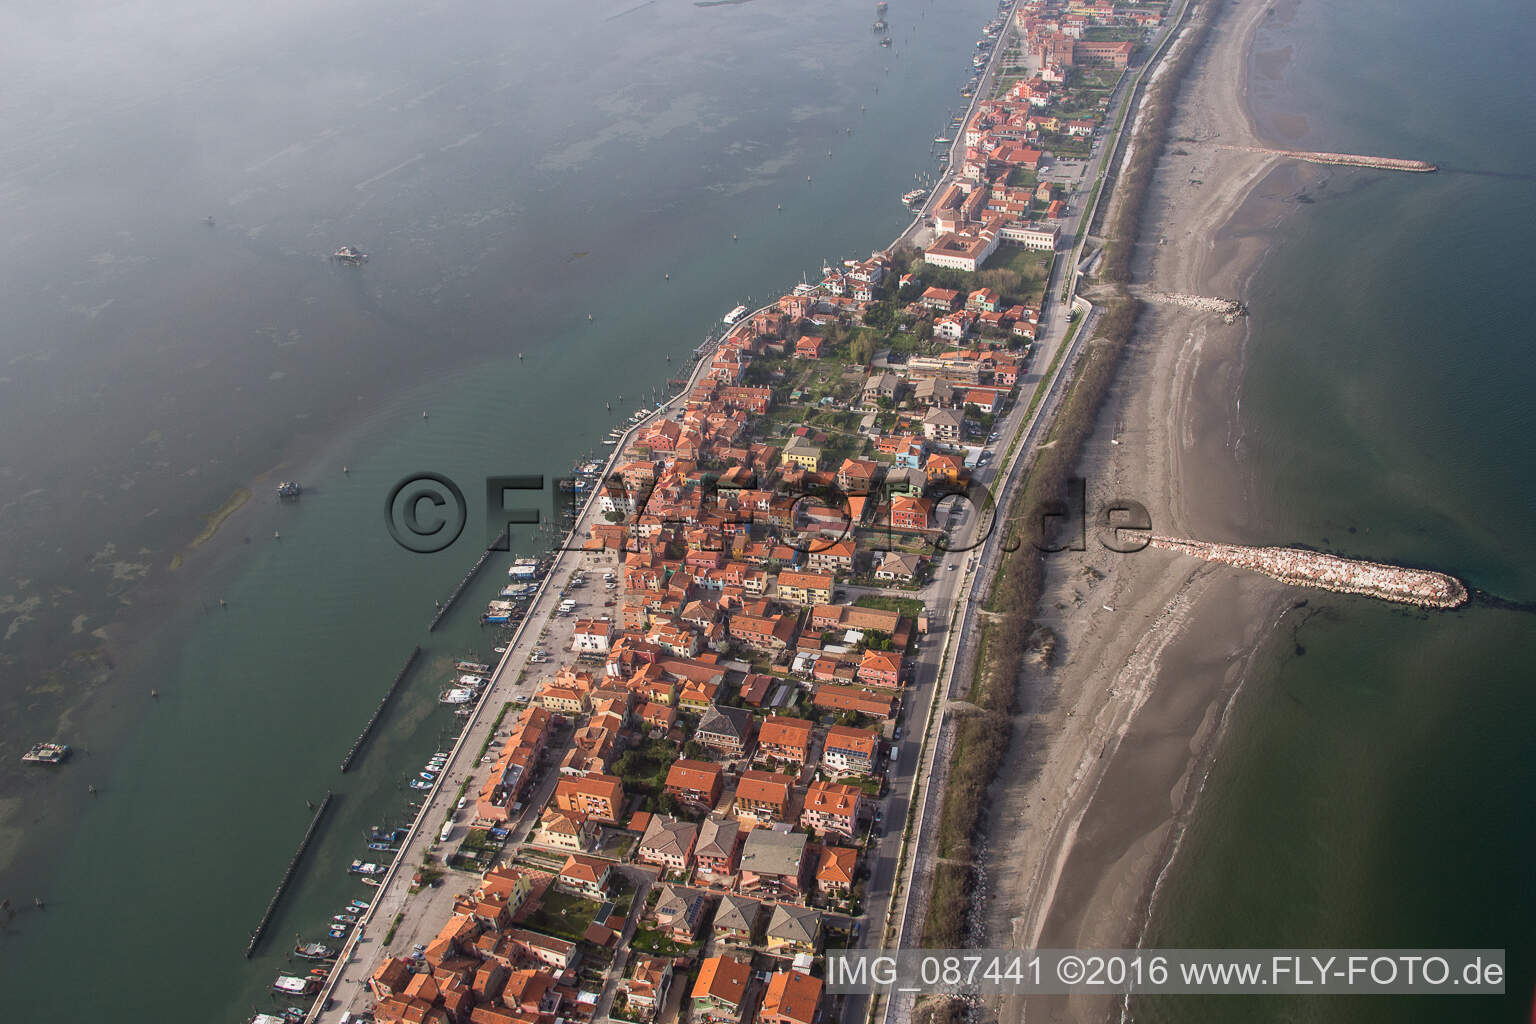 Siedlungsgebiet im Ortsteil Pellestrina in Venedig in Venetien, Italien aus der Luft betrachtet